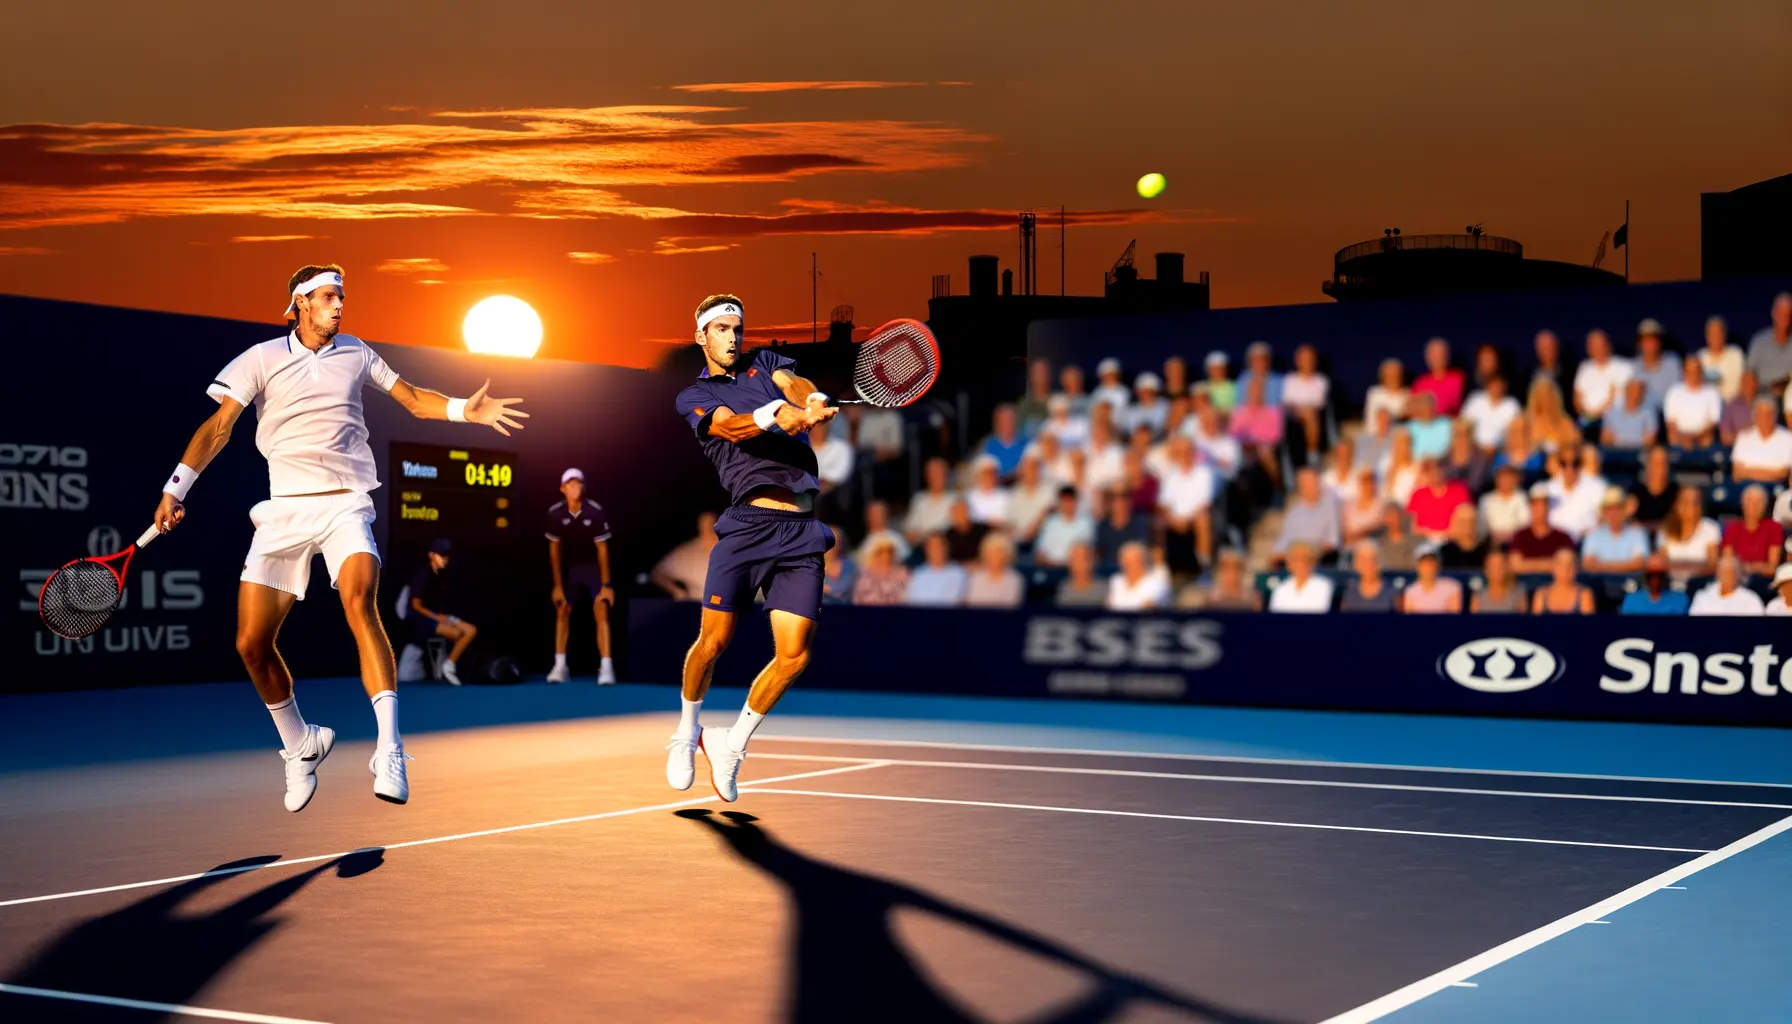 Dramatisches Tennis Match beim Sonnenuntergang